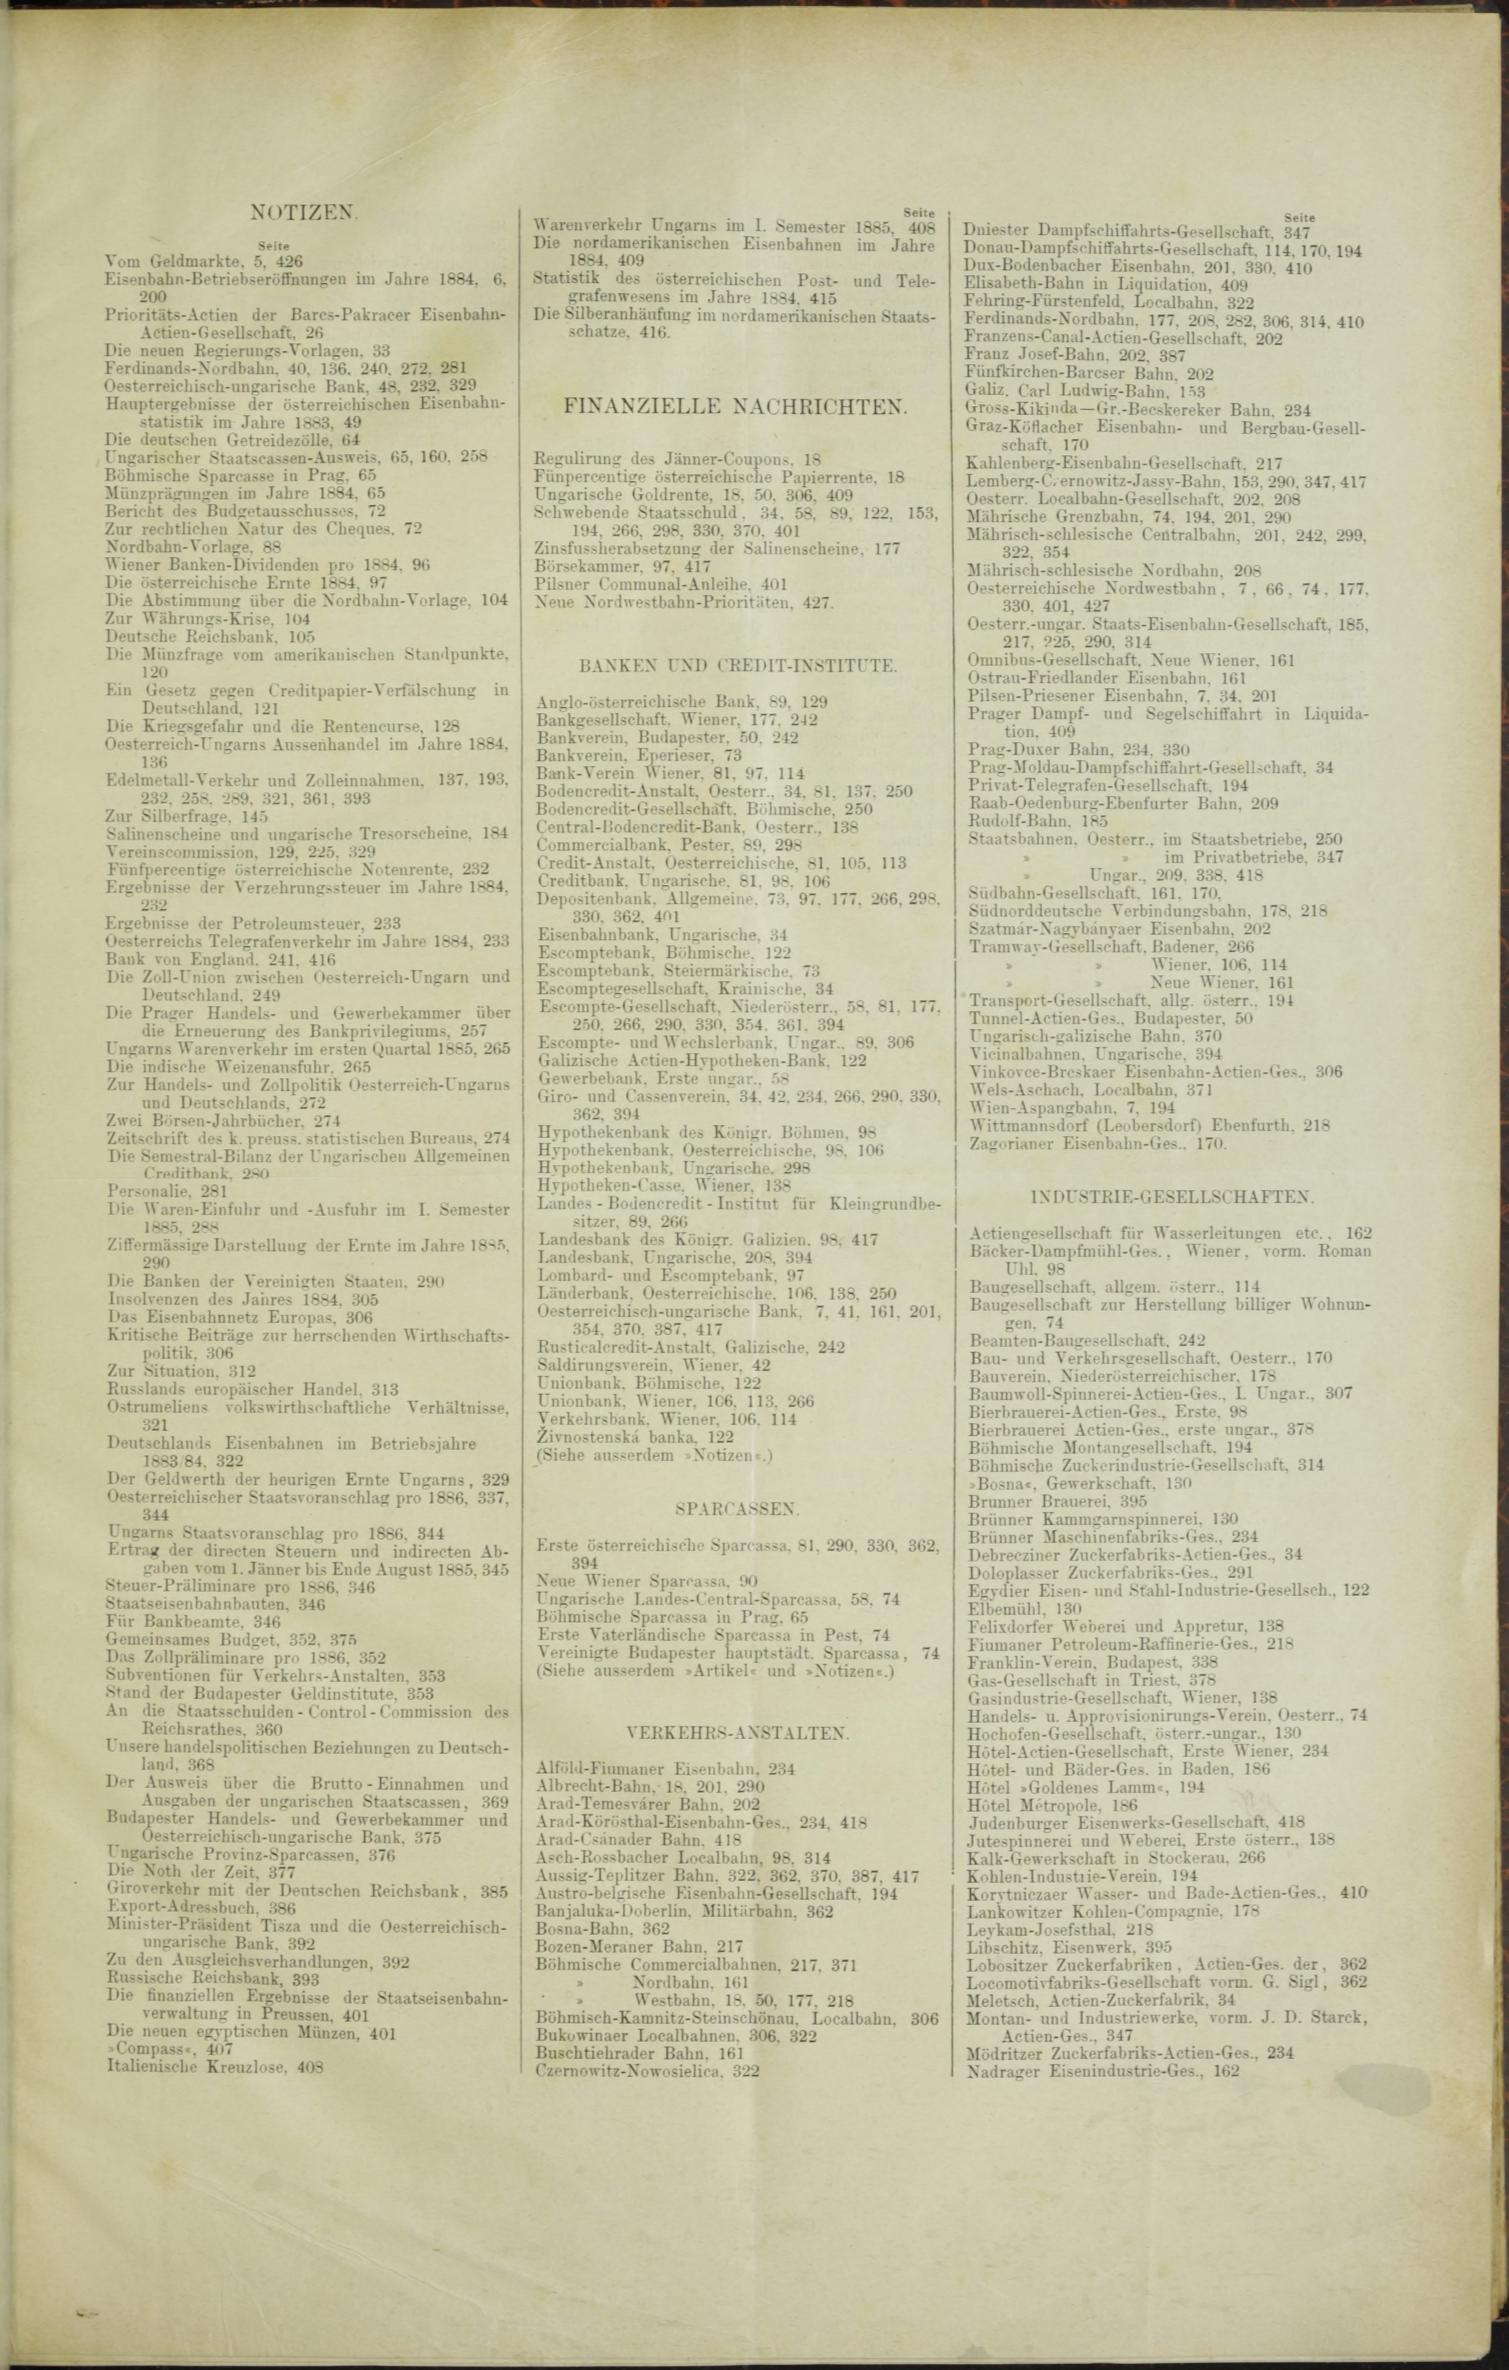 Der Tresor 30.04.1885 - Seite 11